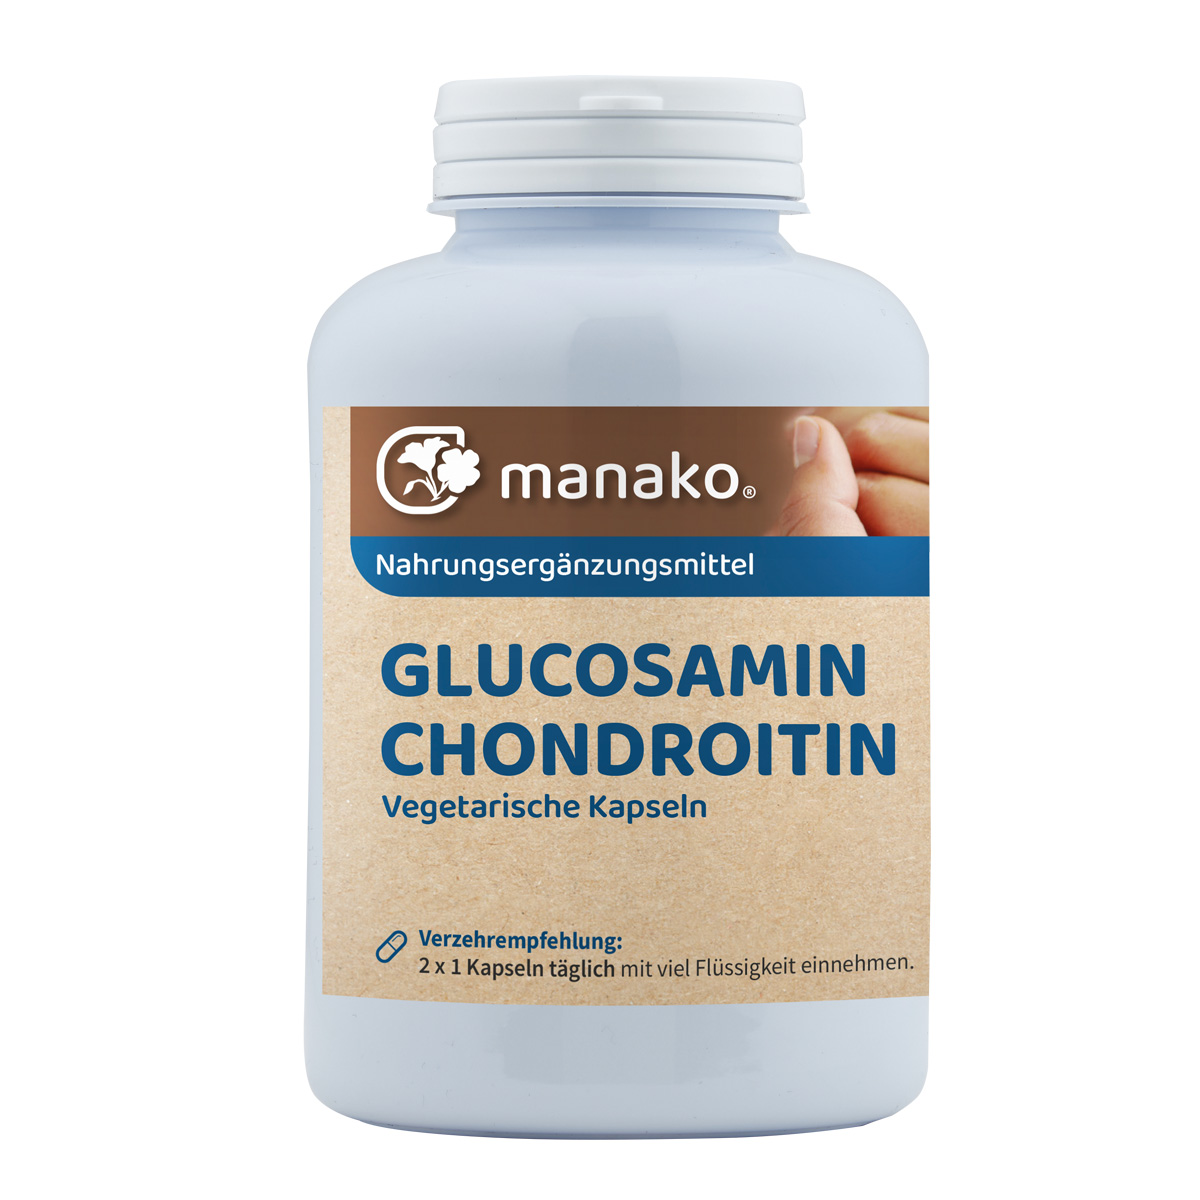 manako Glucosamin und Chondroitin Kapseln, 300 Stück, Dose a 240 g